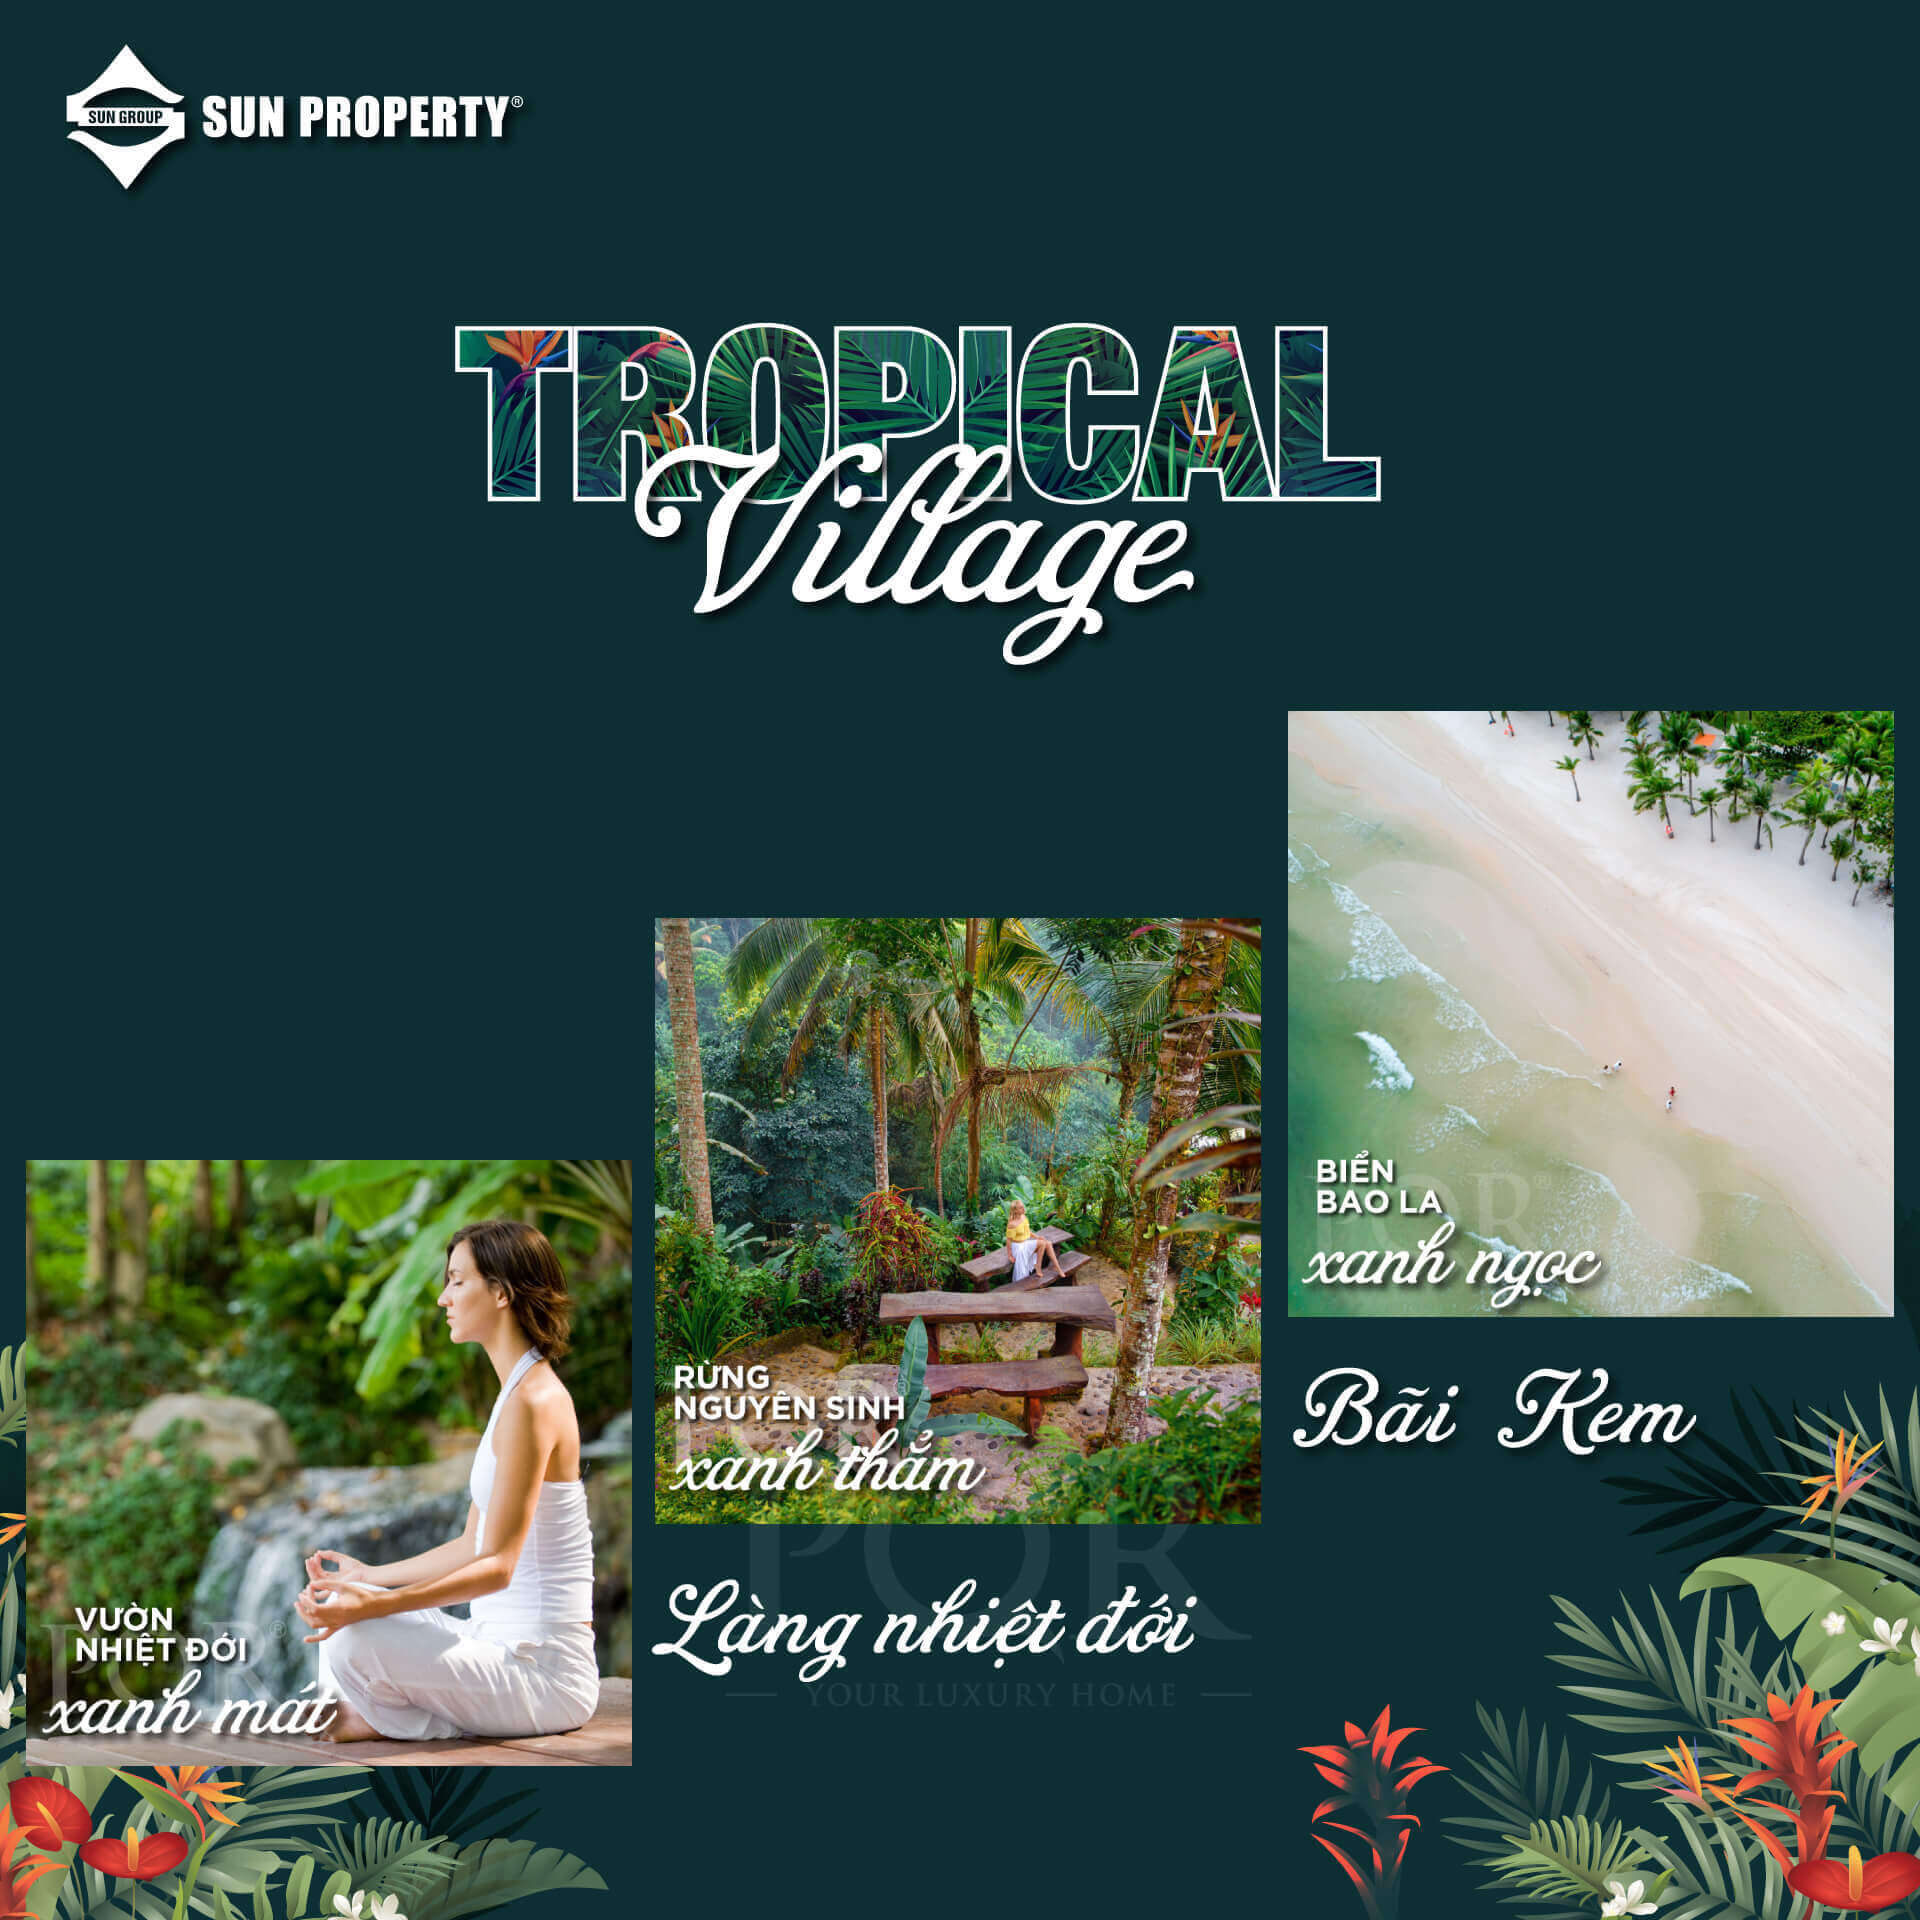 Sun Tropical Village - Tận hưởng cuộc sống miền nhiệt đới giữa 3 tầng thiên nhiên tuyệt tác